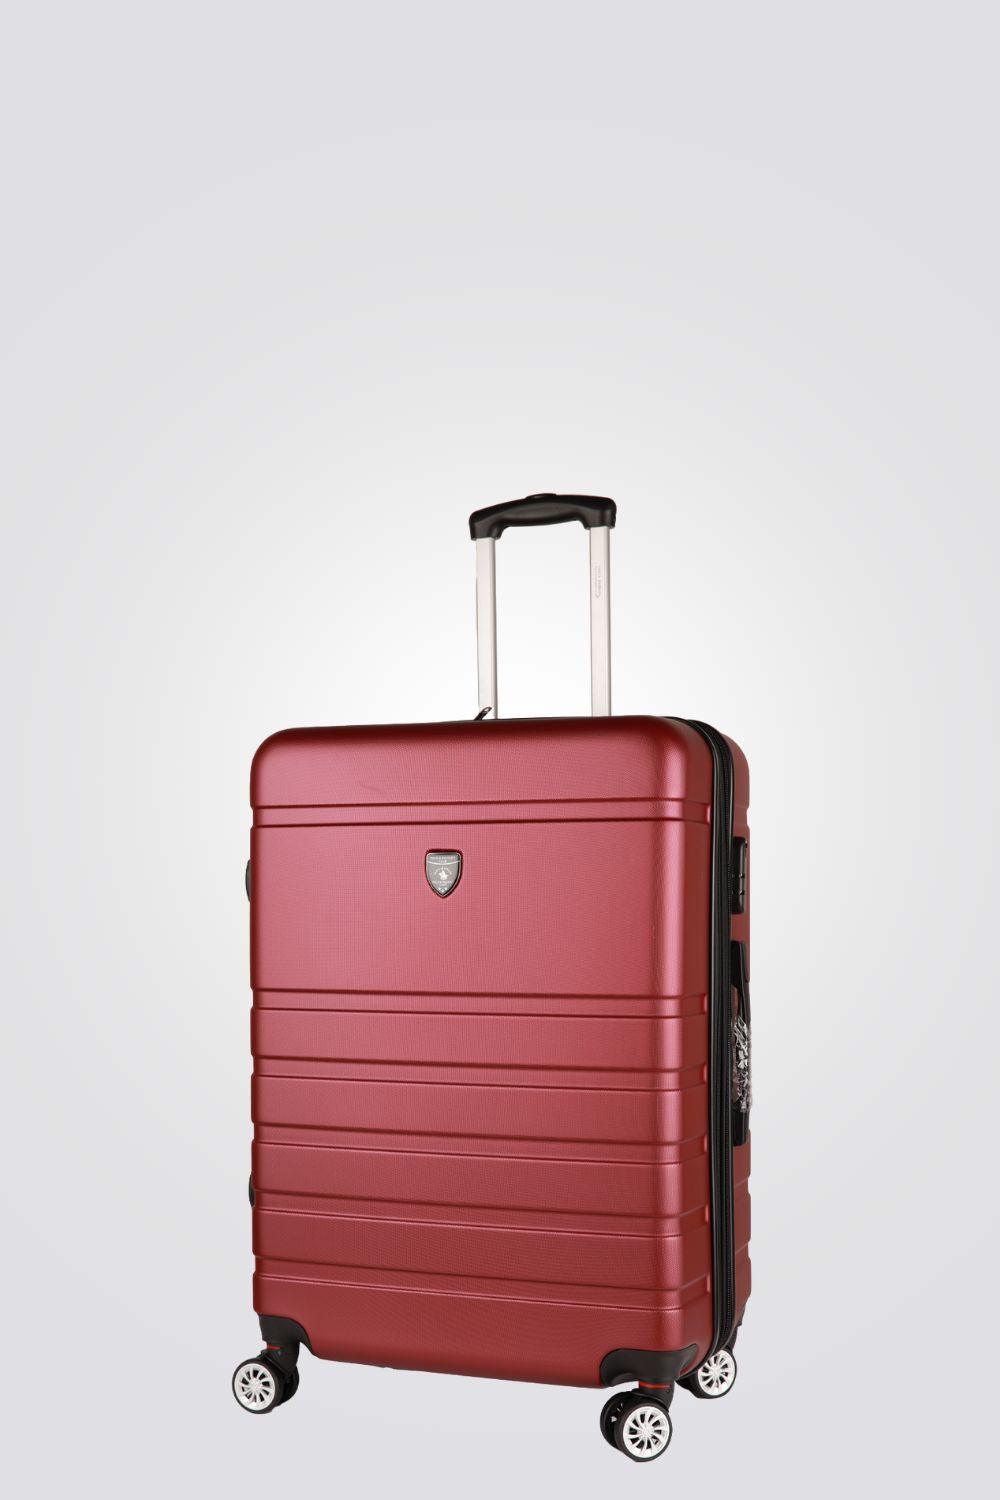 מזוודה טרולי עלייה למטוס 20" דגם 1807 בצבע בורדו - MASHBIR//365